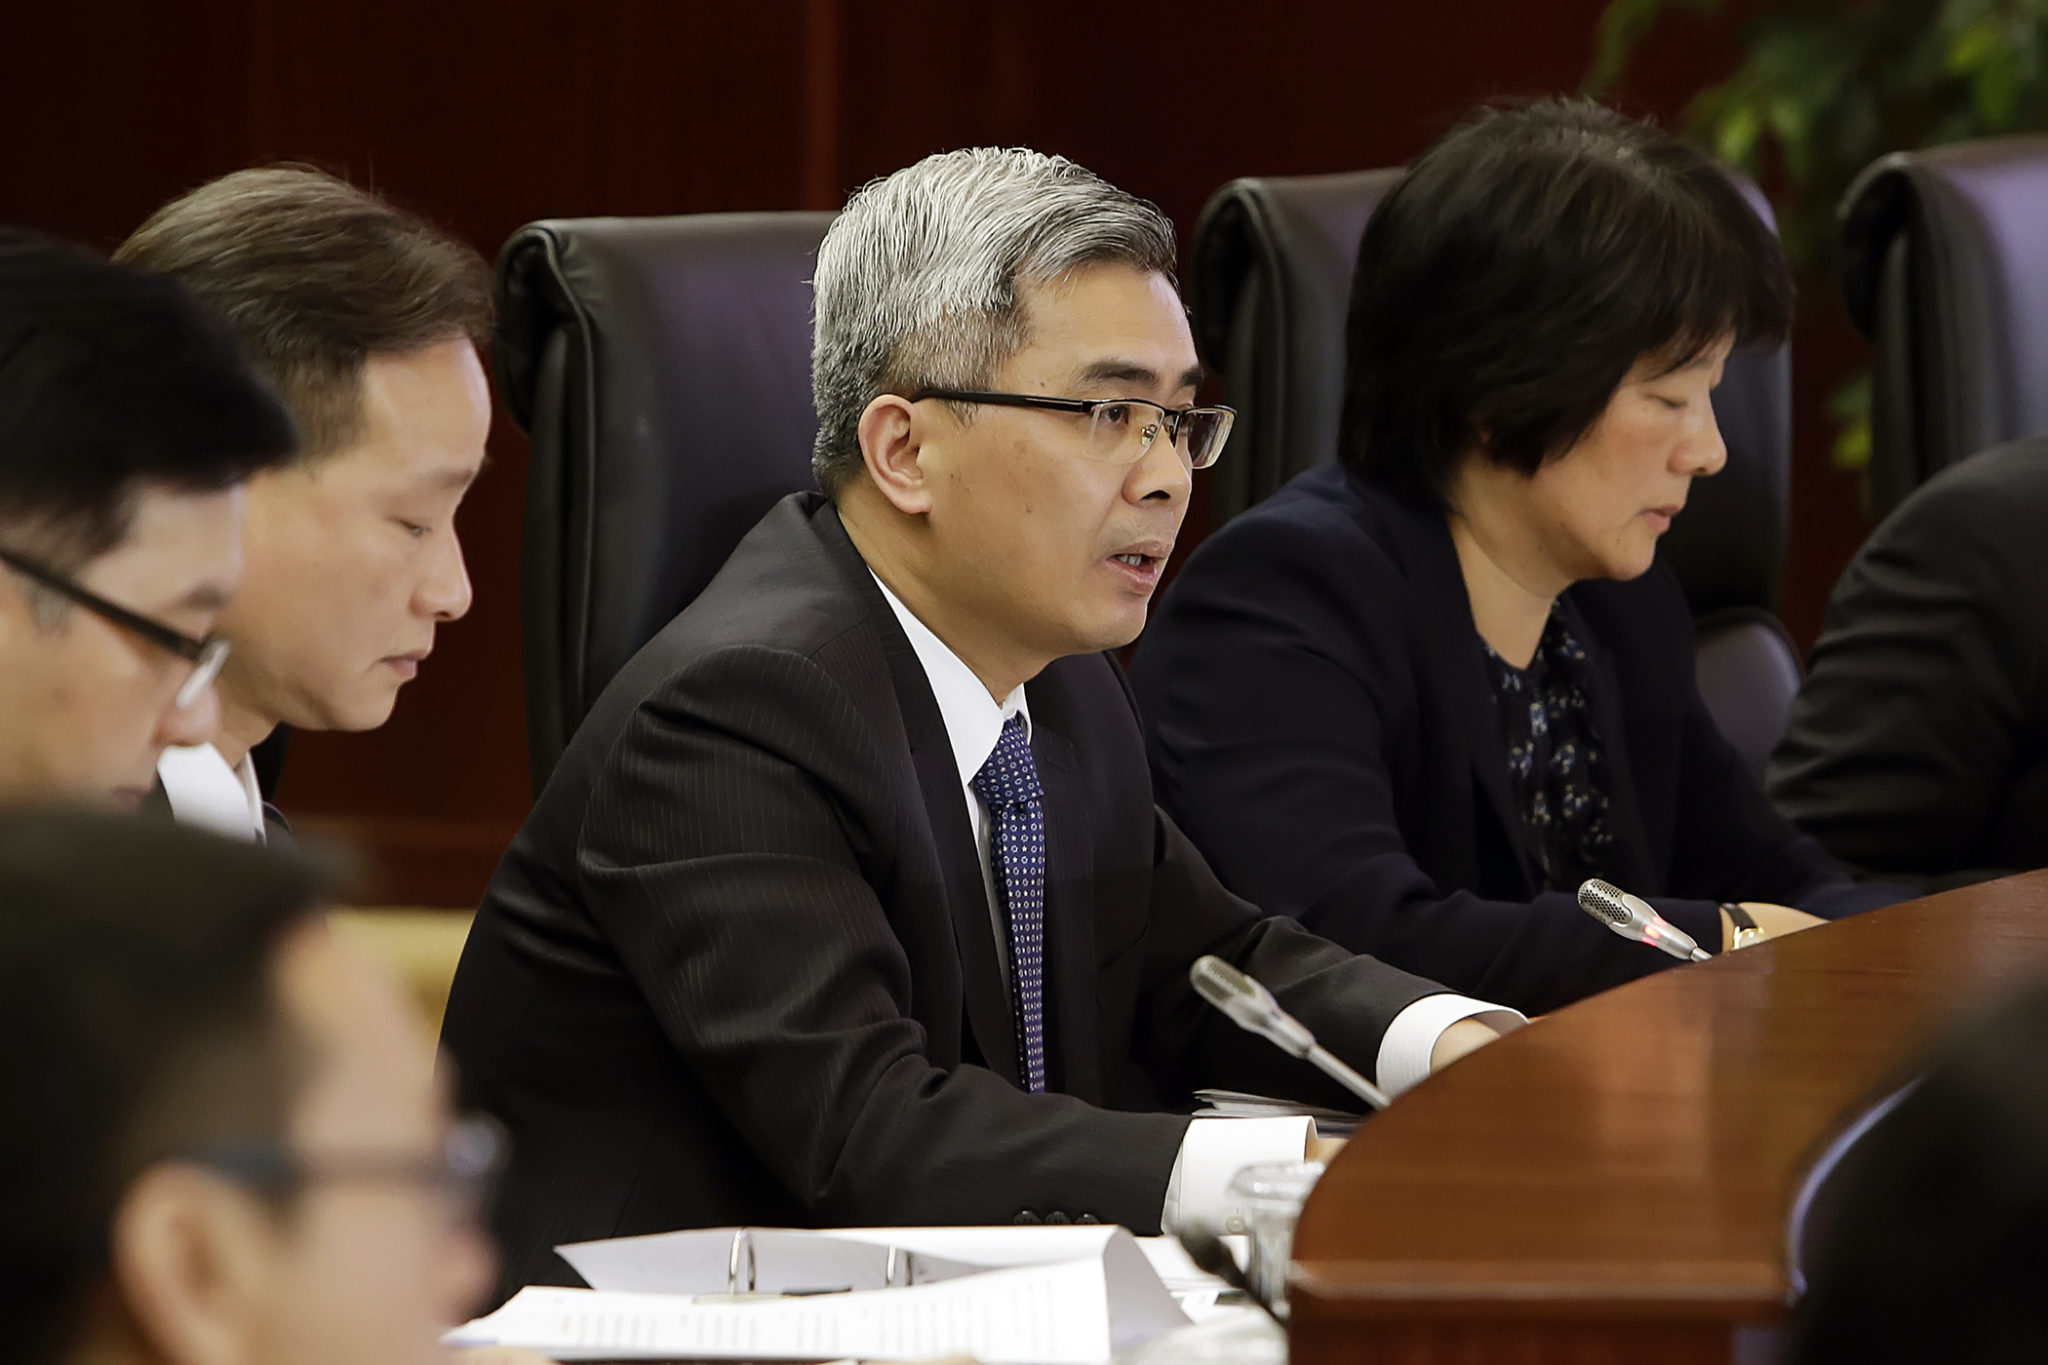 Obras na prisão | “Estou mais preocupado com o atraso do que os deputados”, diz Wong Sio Chak